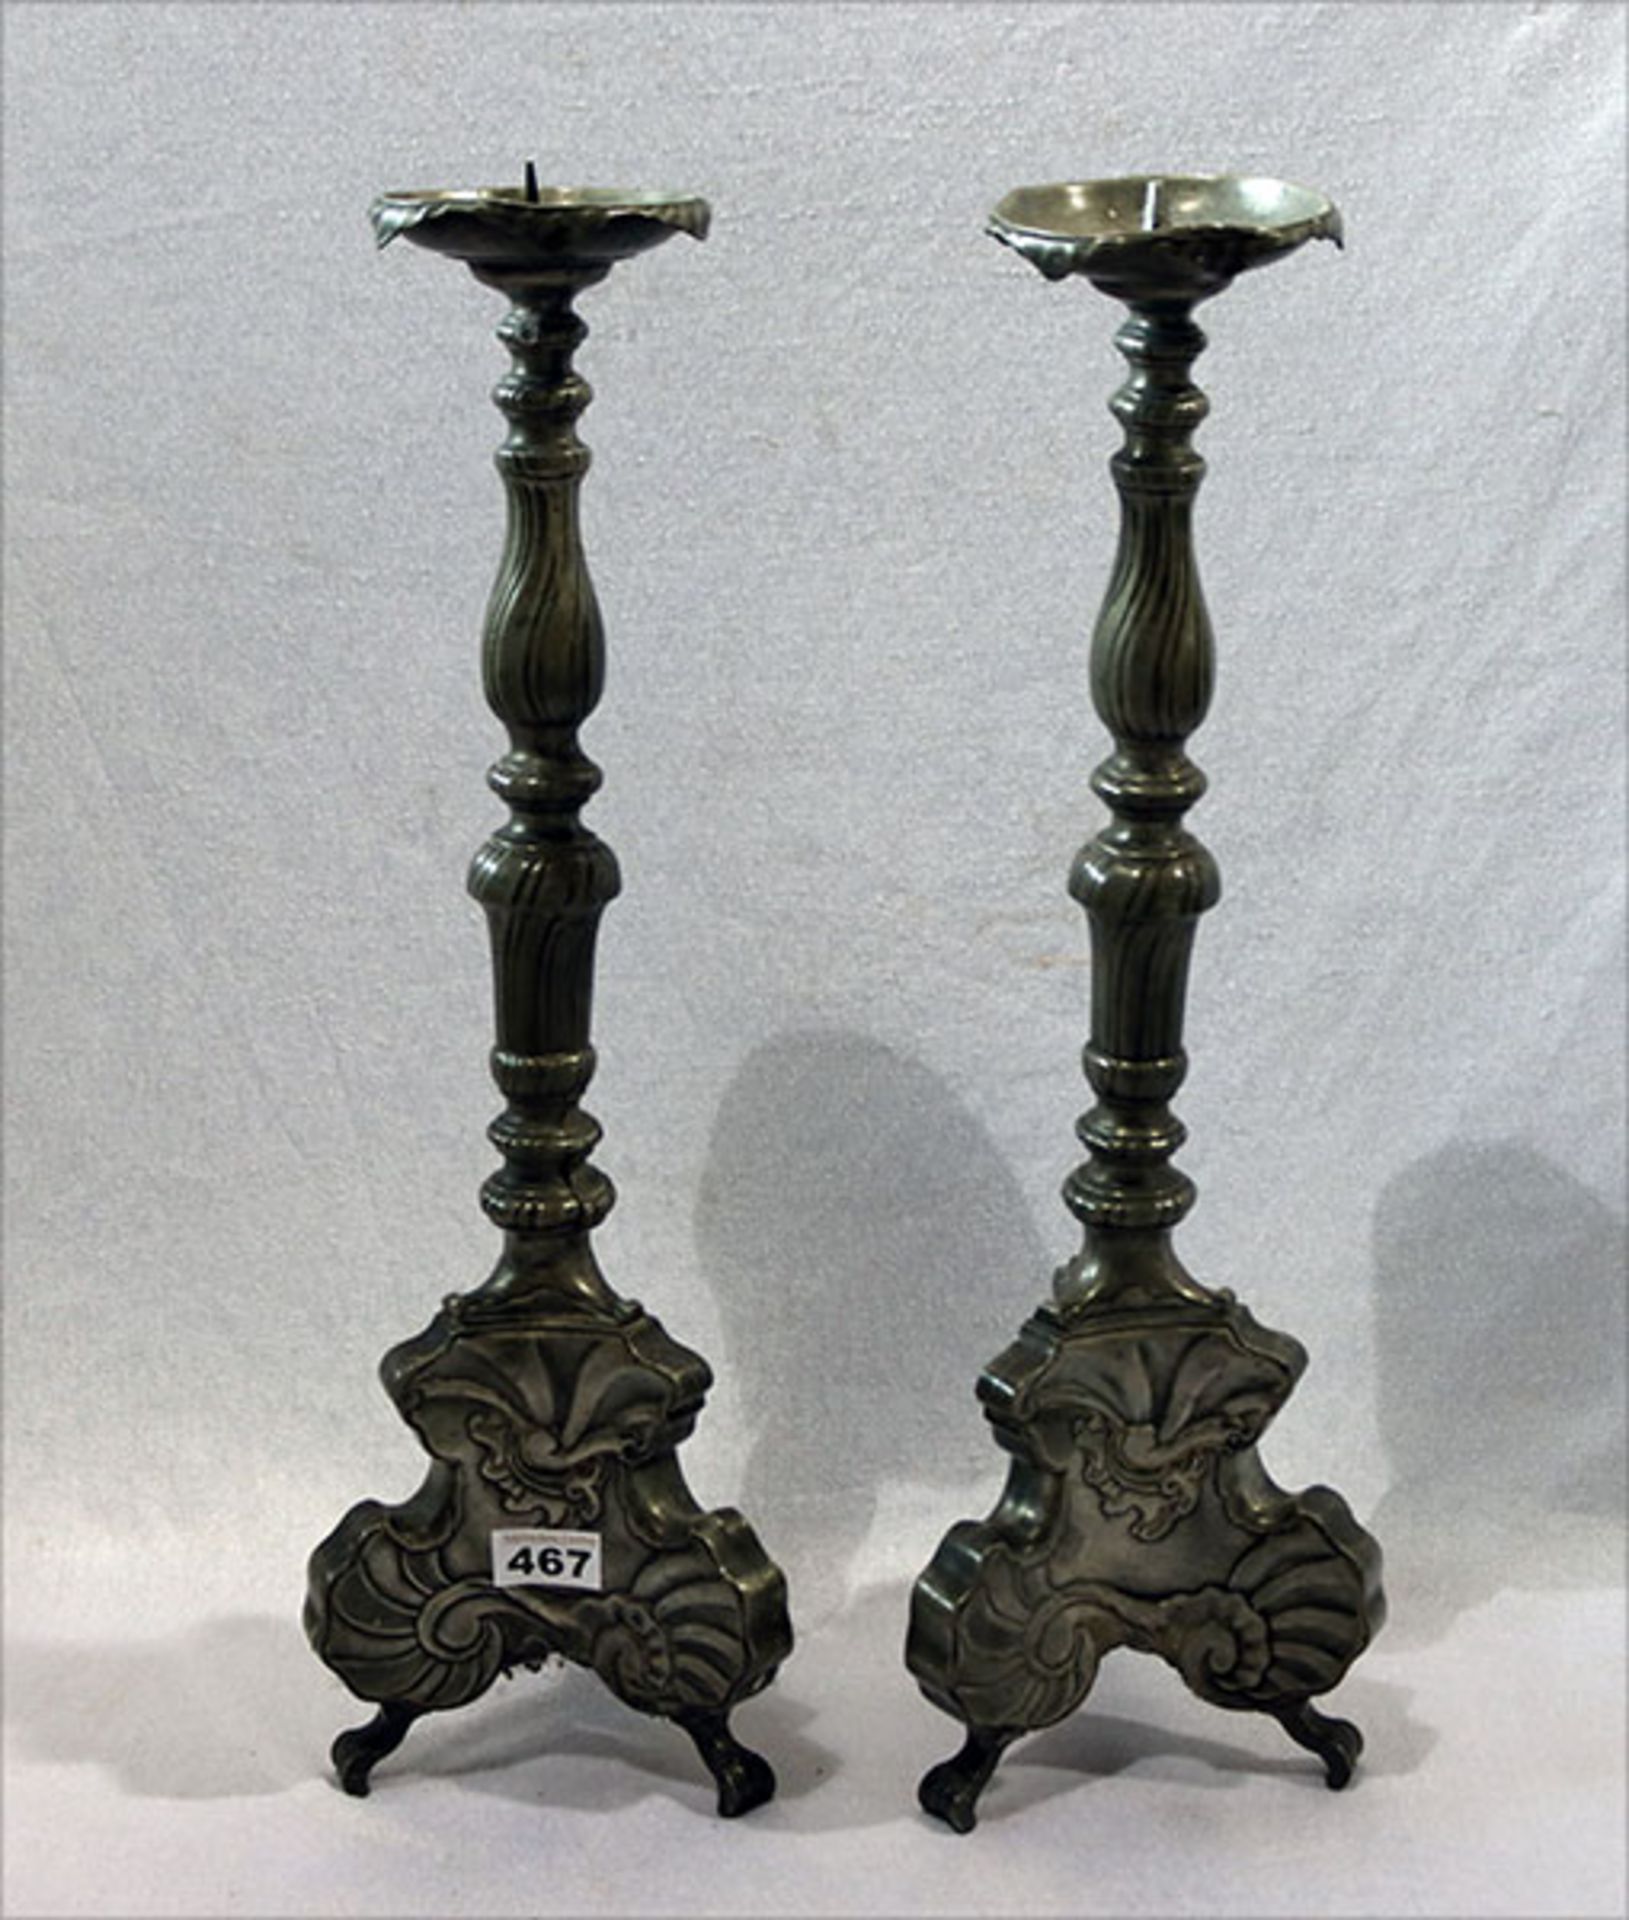 Paar Zinn Kerzenleuchter mit Reliefdekor, teils beschädigt, zus. ca. 2,8 kg, H 57 cm, Alters- und